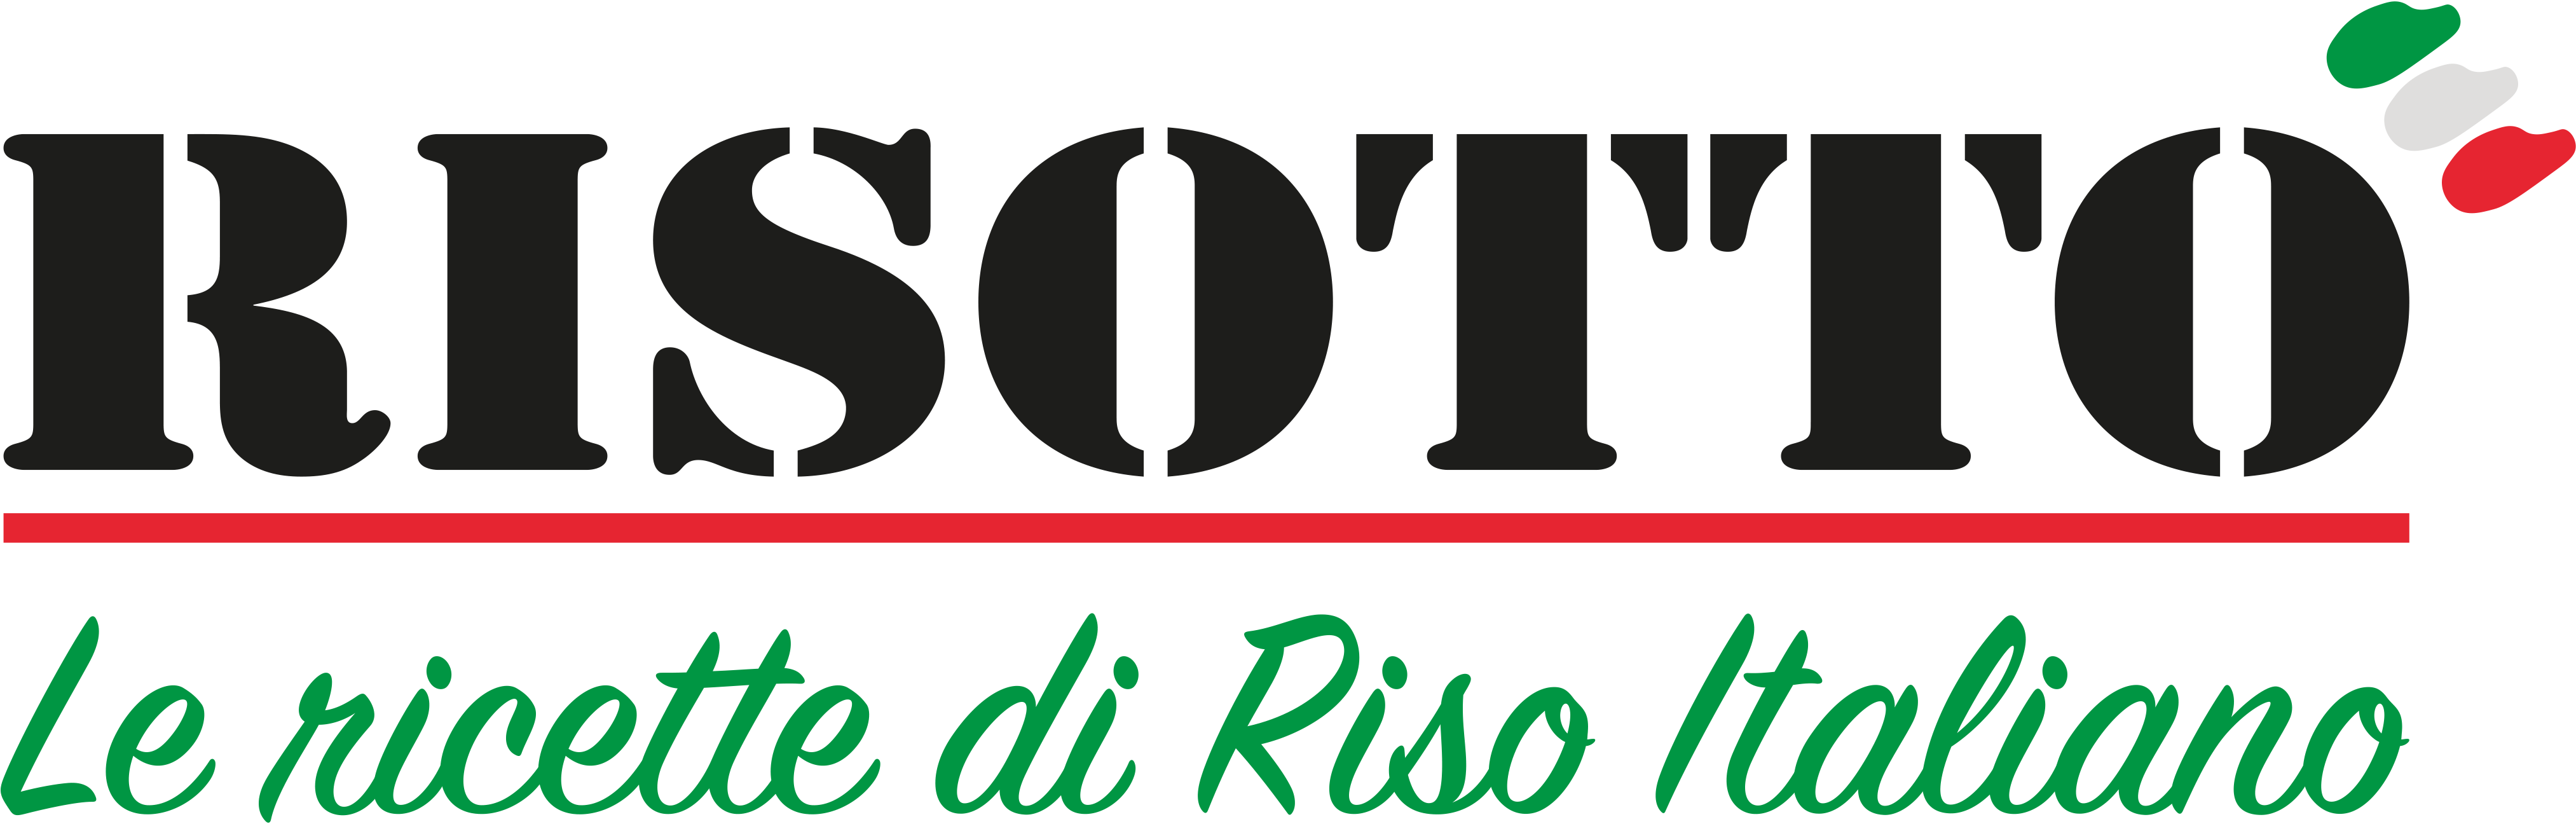 RISOTTO | Ricettario di ricette di riso italiano